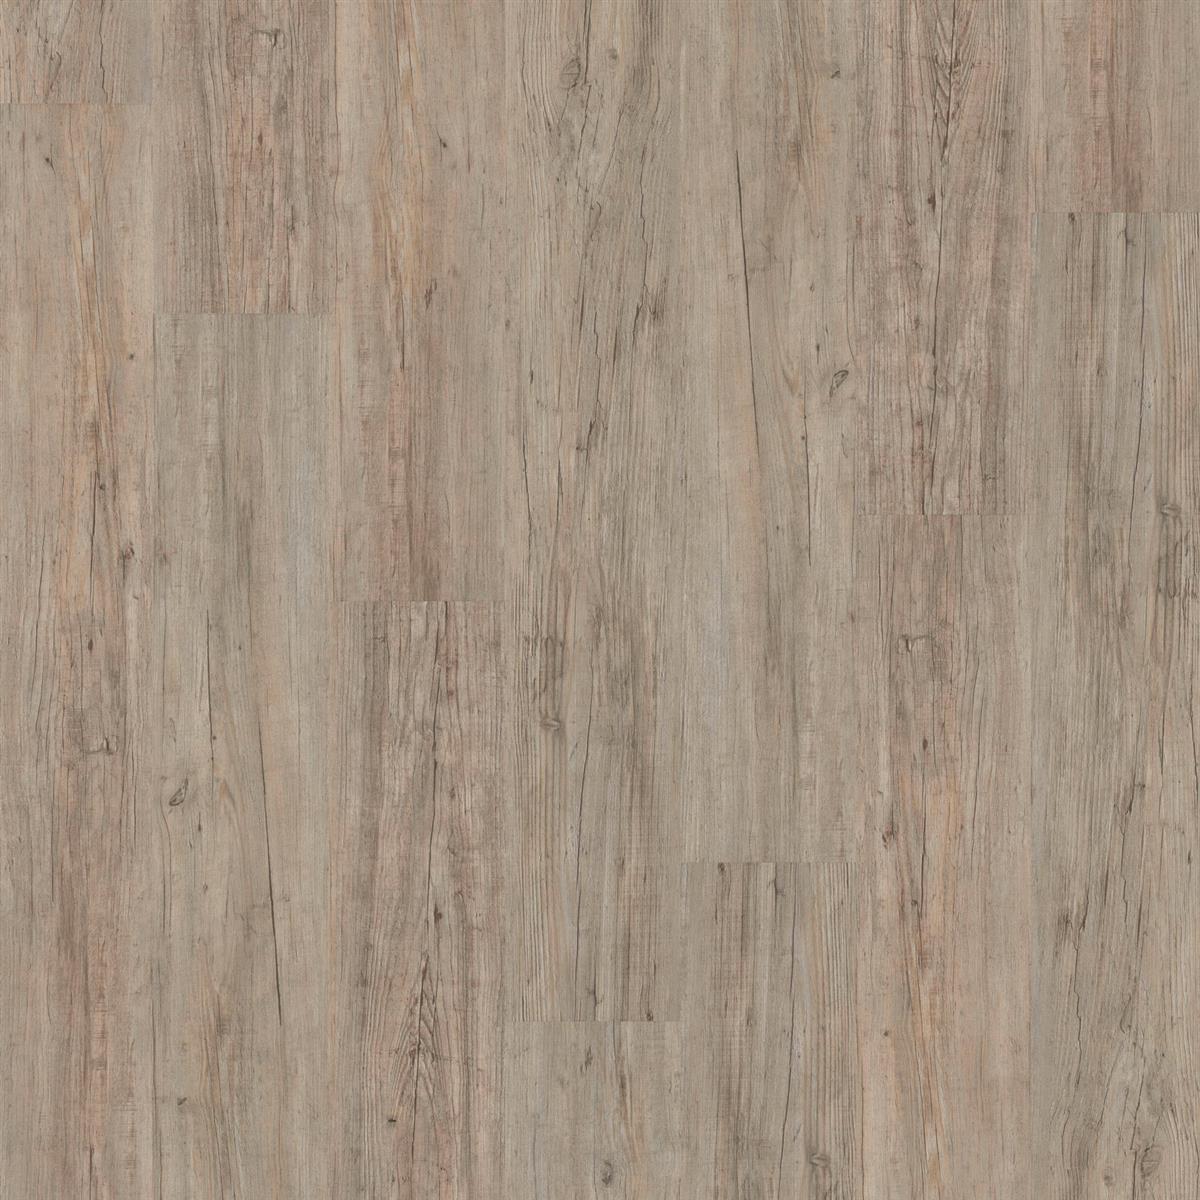 Klebevinyl JOKA Designböden 555 | 5518 Grey Driftwood